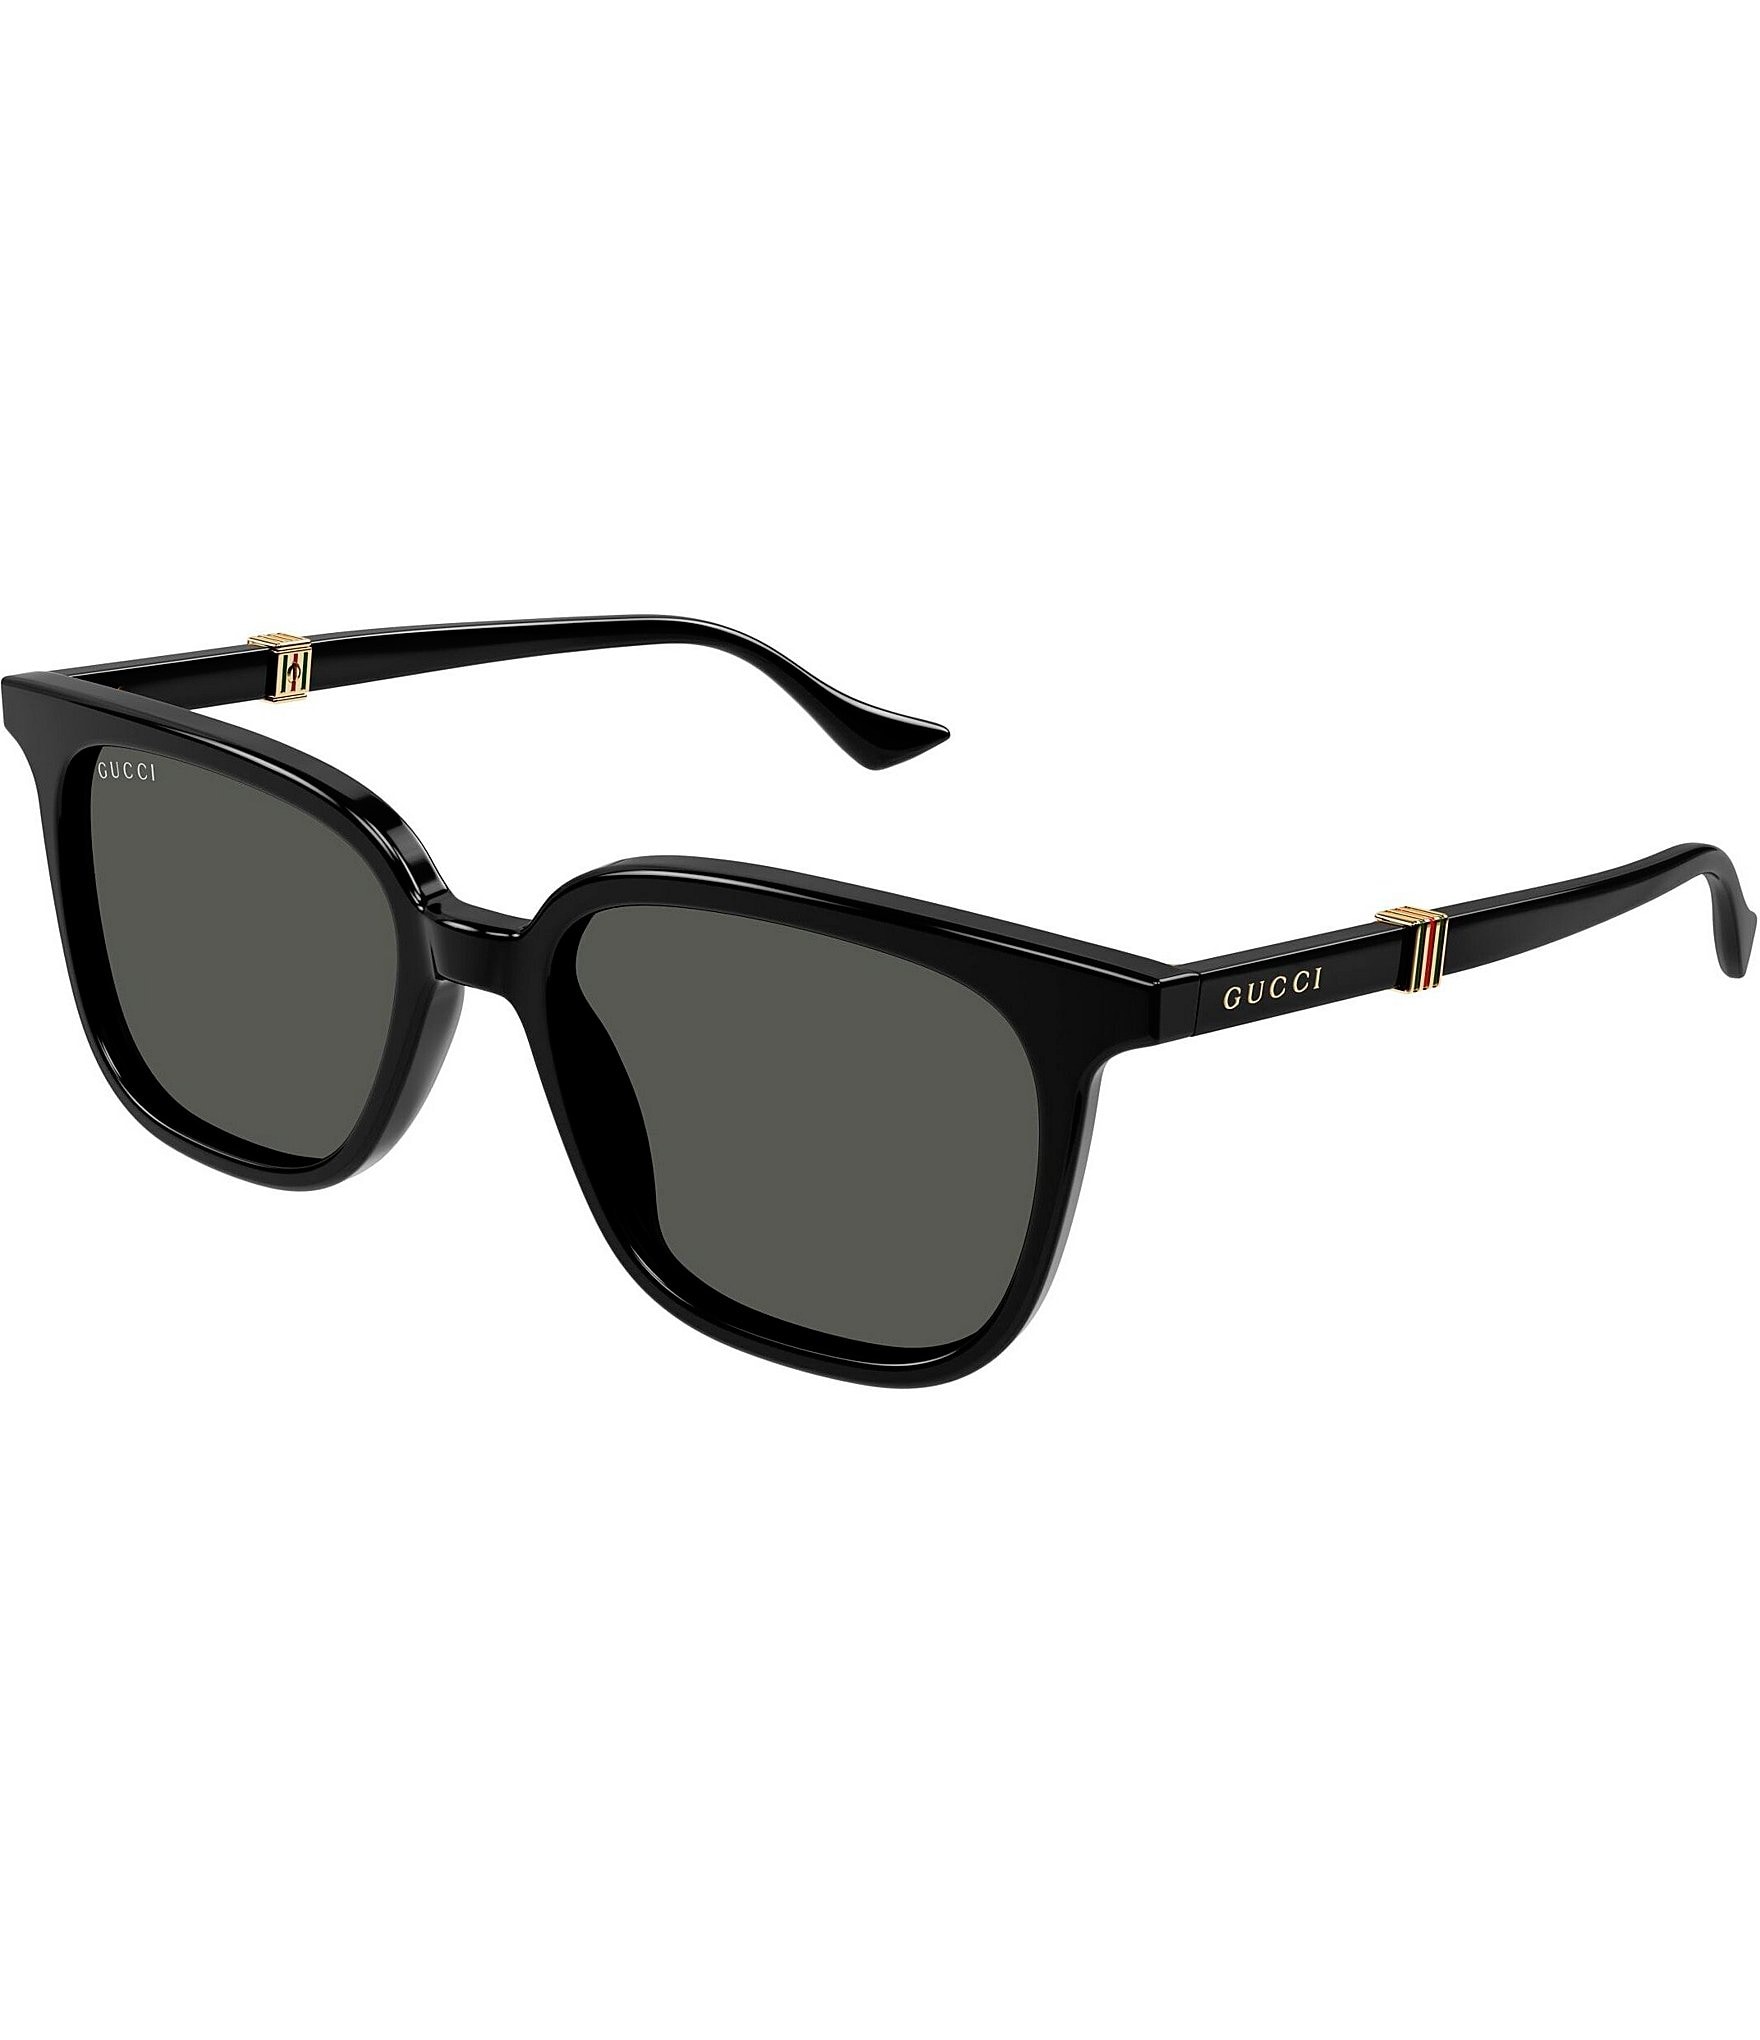 Gucci sunglasses - Accessories